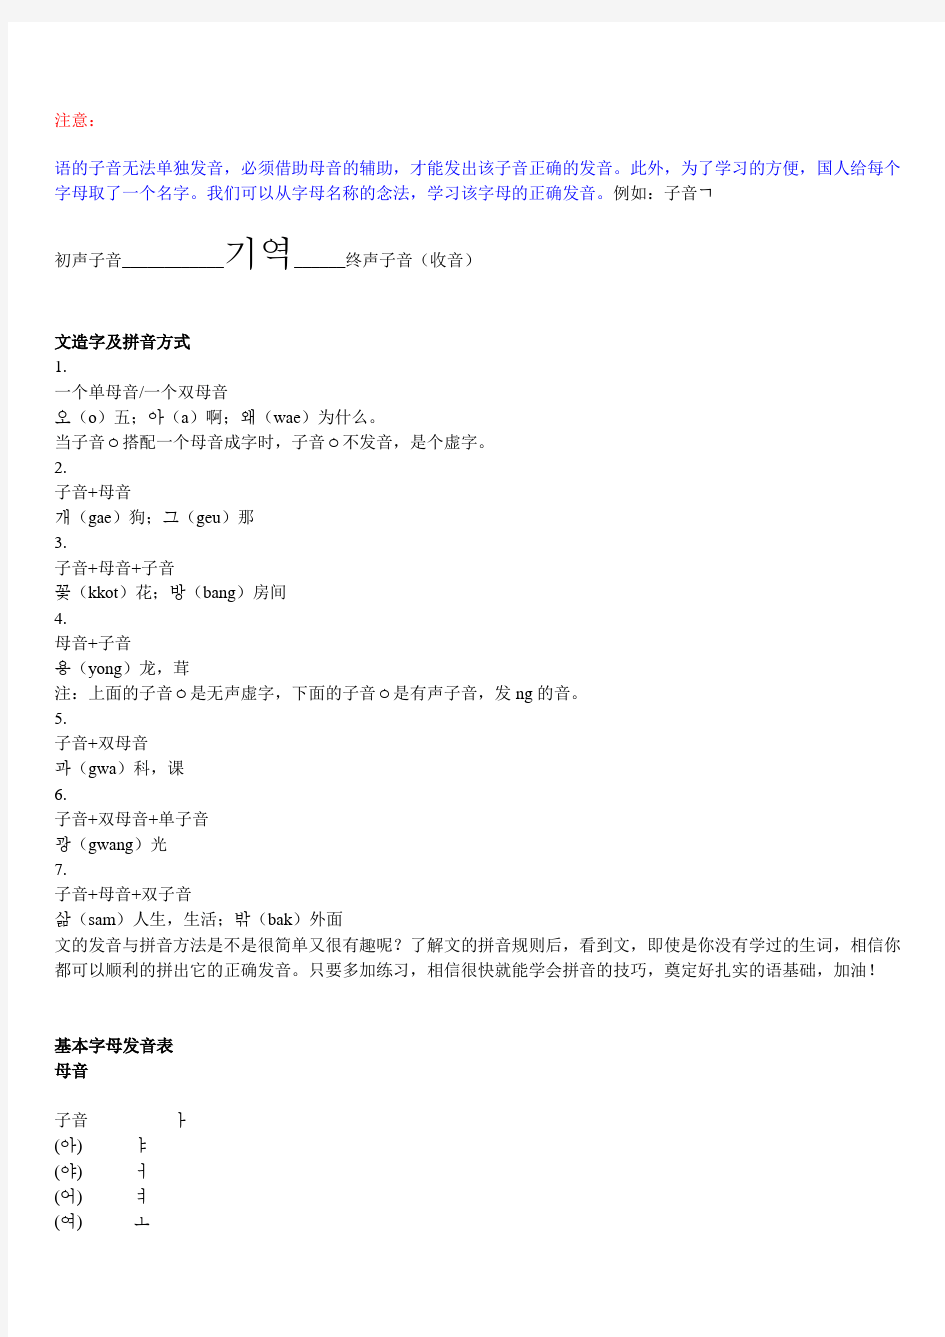 韩国语发音规则总结